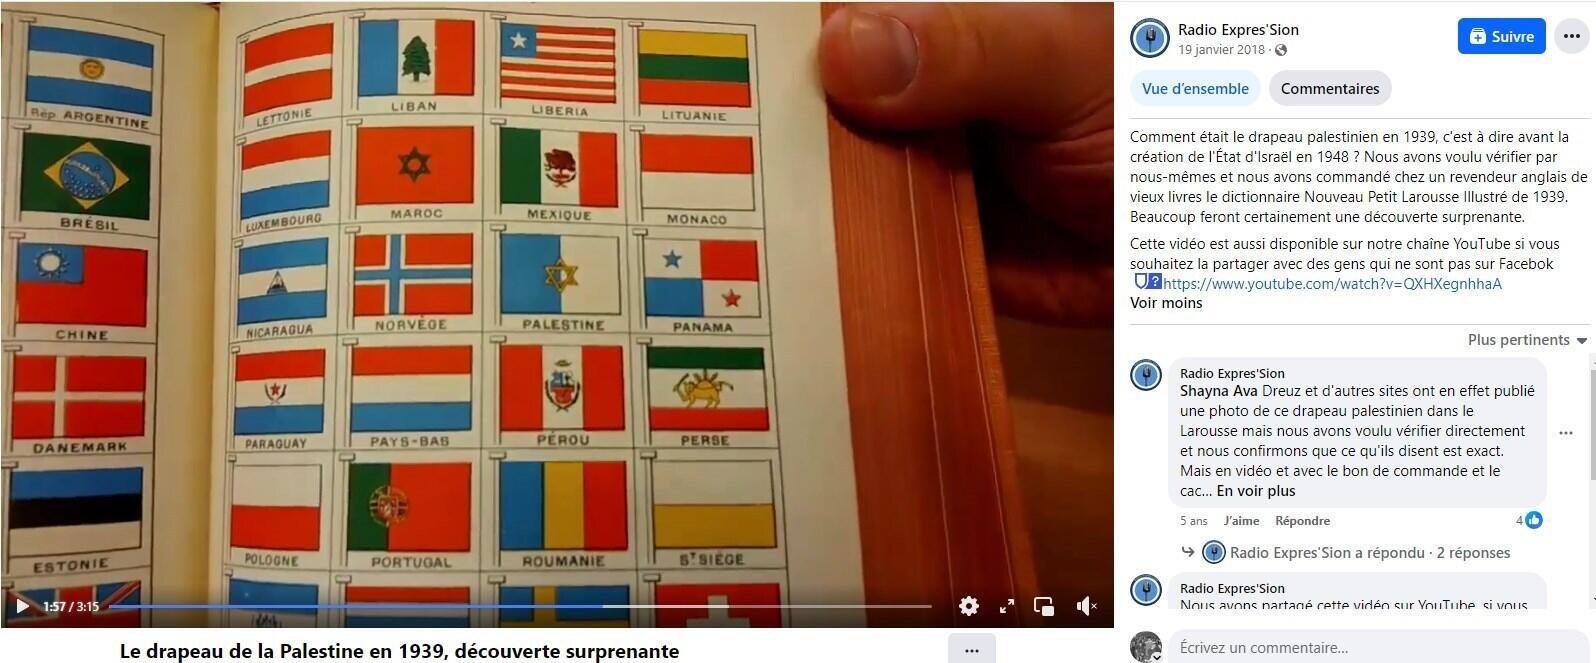 Dies ist ein Screenshot eines Videos, das 2018 von einem pro-israelischen Webradiosender auf Facebook gepostet wurde und die Ausgabe des illustrierten Larousse von 1939 mit einem Bild der blau-weißen Flagge mit dem Davidstern zeigt, die als offizielle Flagge präsentiert wird von Palästina.